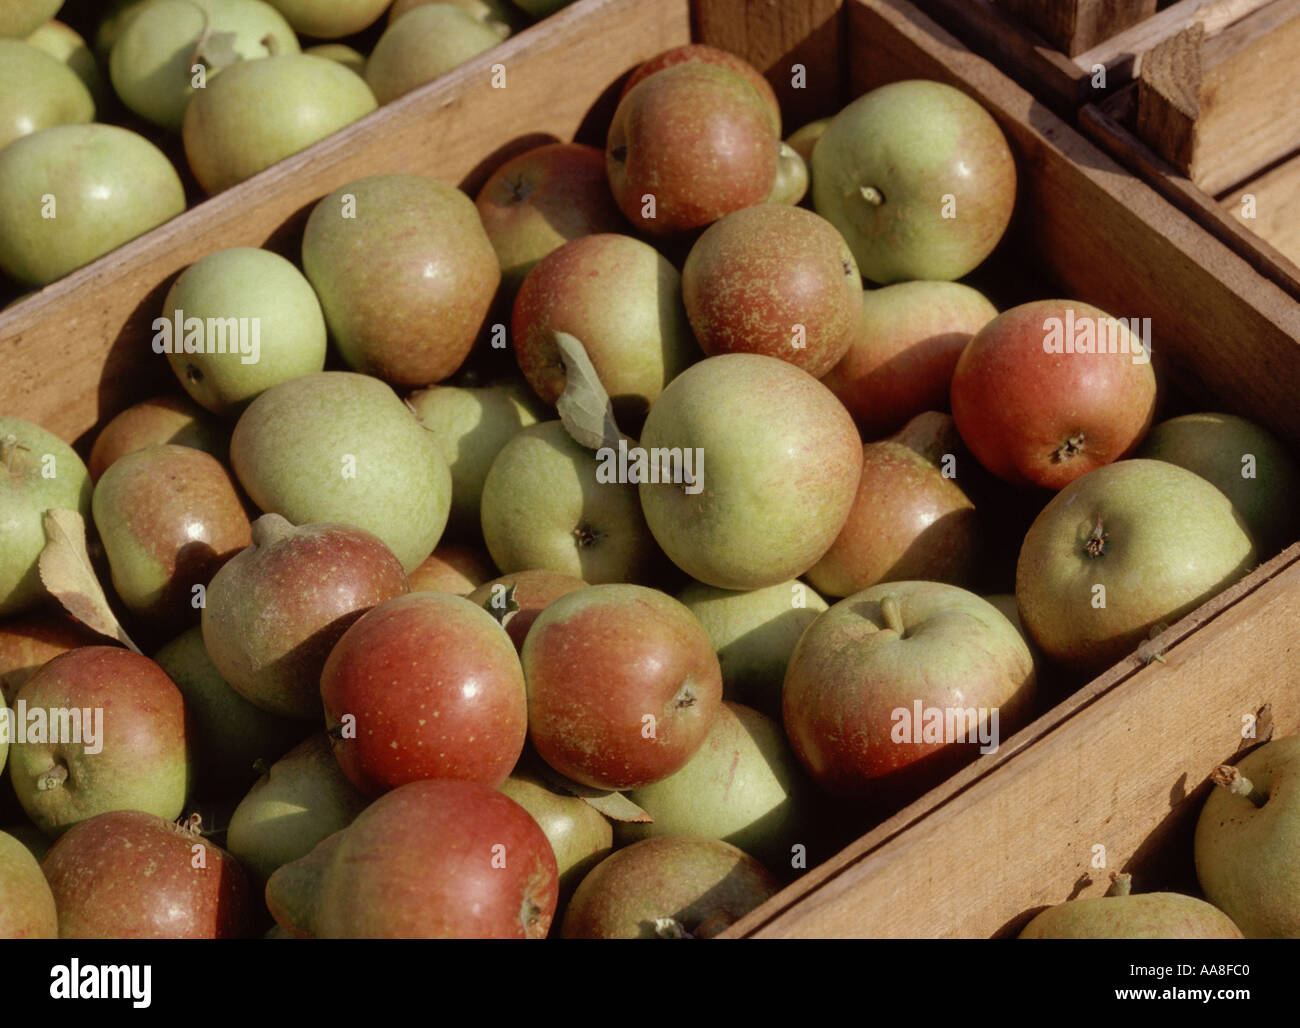 Cox Äpfel gepflückt nach der Ernte in Kisten Stockfoto